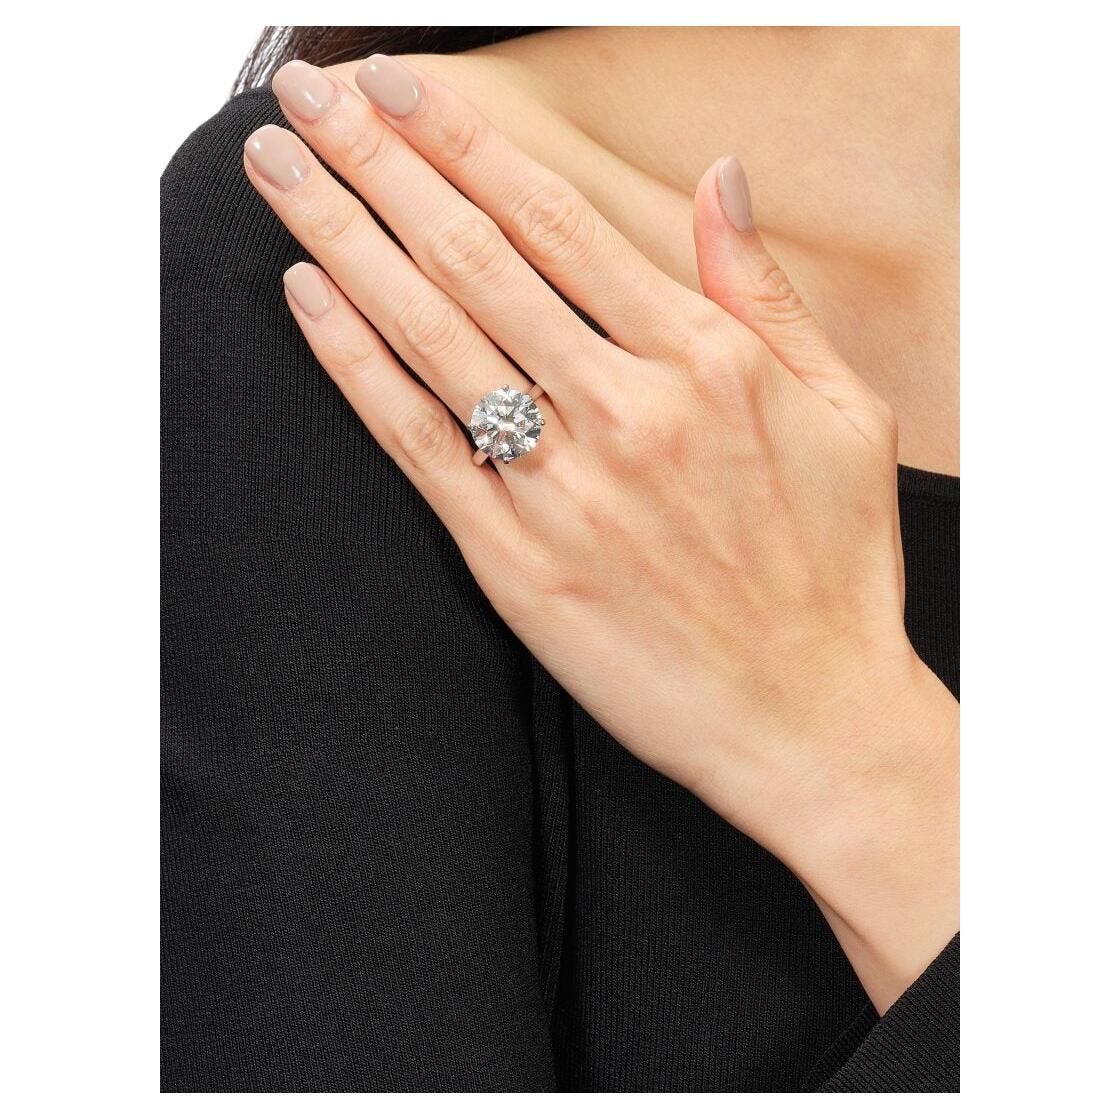 Schöner Ring mit einem erstaunlichen 10 Karat runden Diamanten im Brillantschliff. Der Rahmen ist aus Platin

Insgesamt ist es ein außergewöhnlicher Diamant.